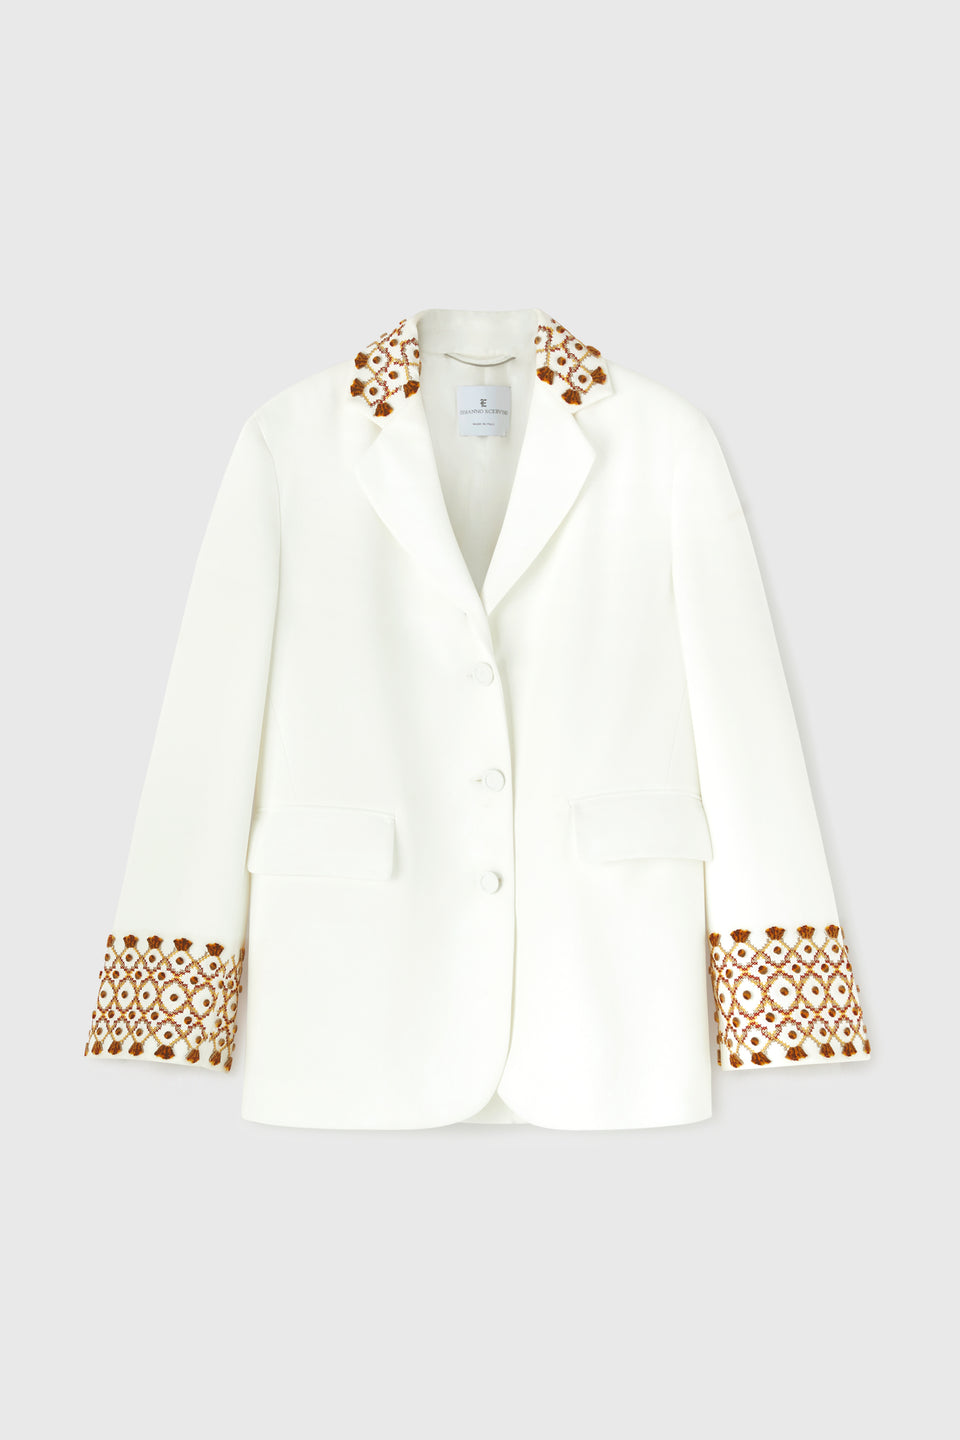 Single-breasted white fabric jacket